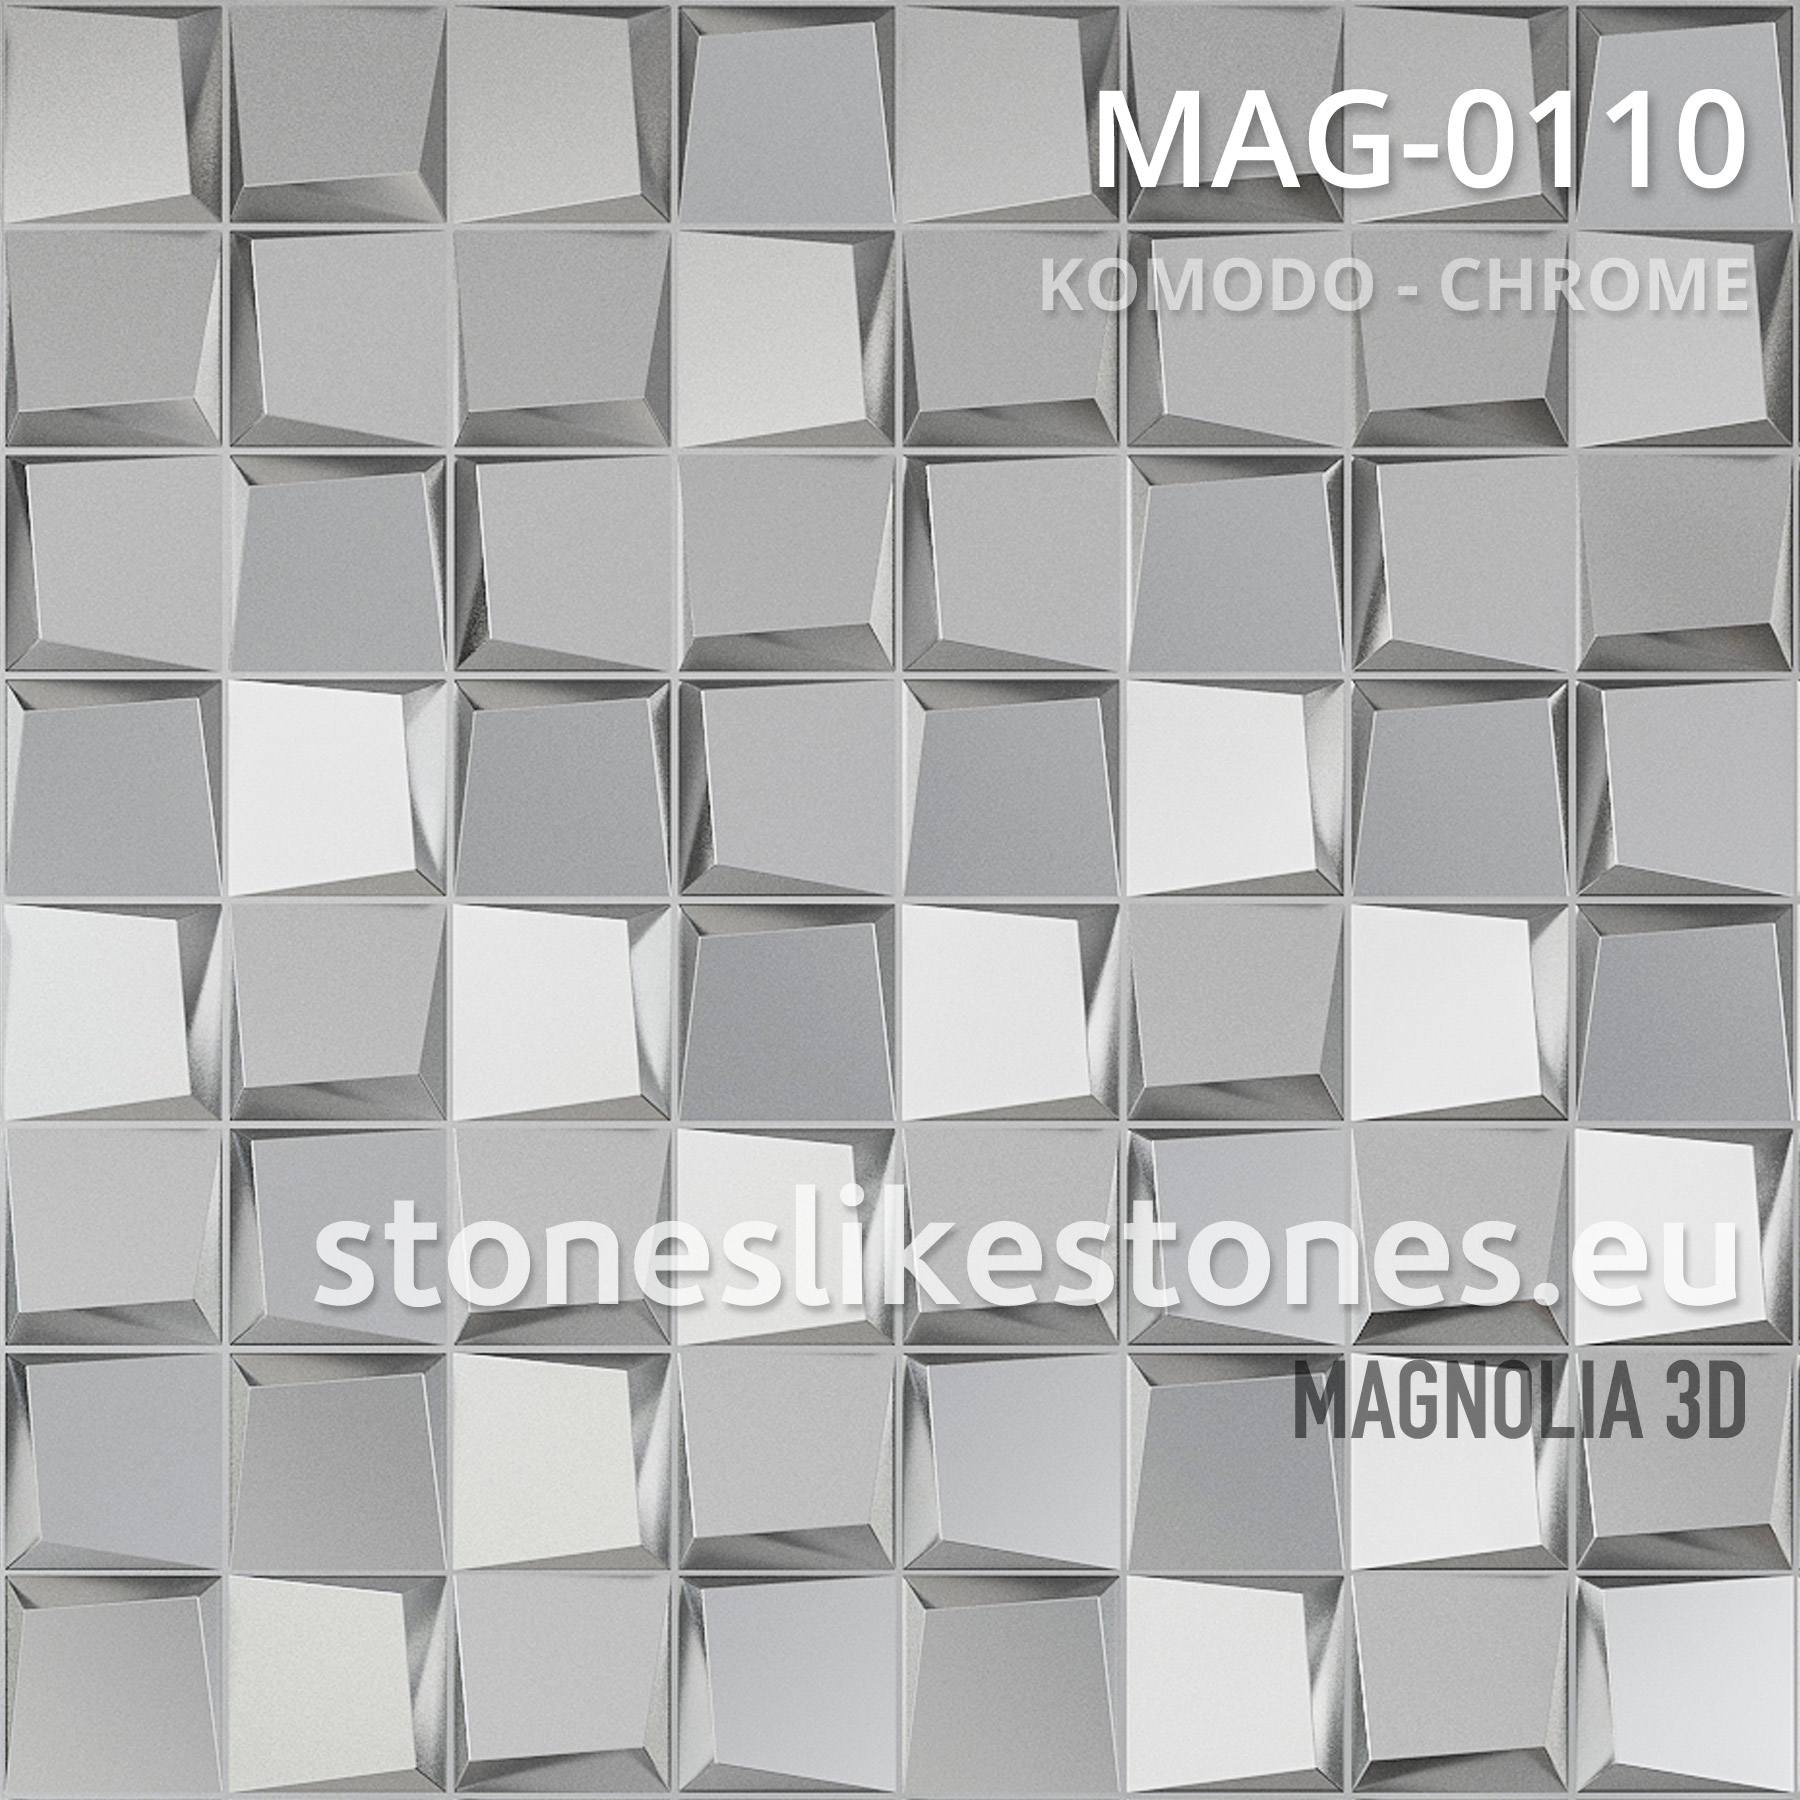 Magnolia 3D – MAG-0110 KOMODO – CHROME